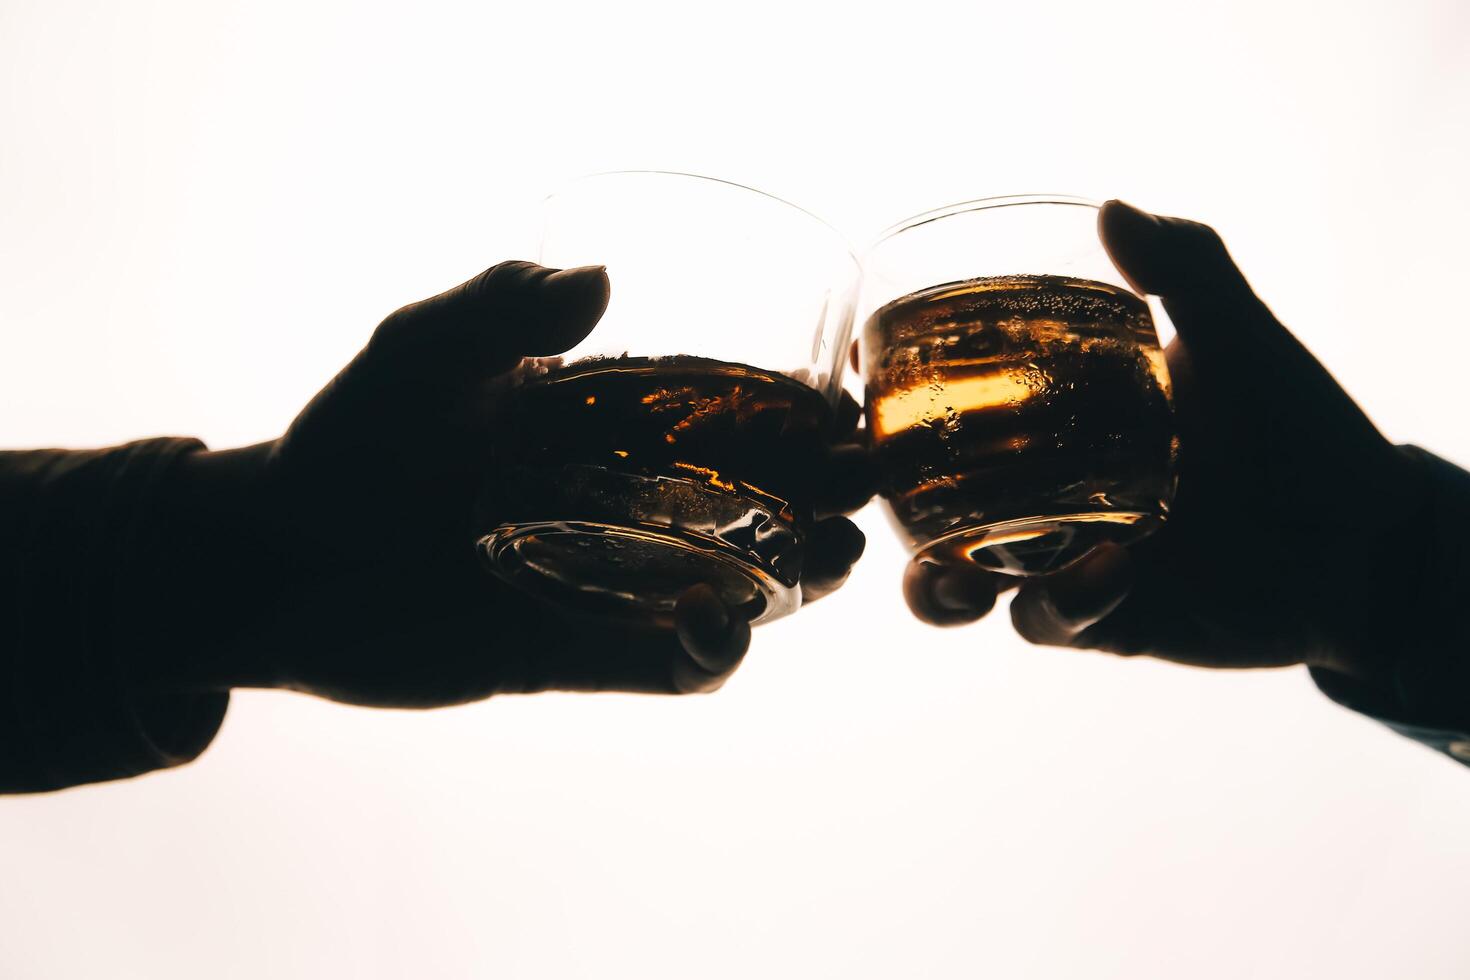 Whiskey splashing out of glass, isolated on white background photo